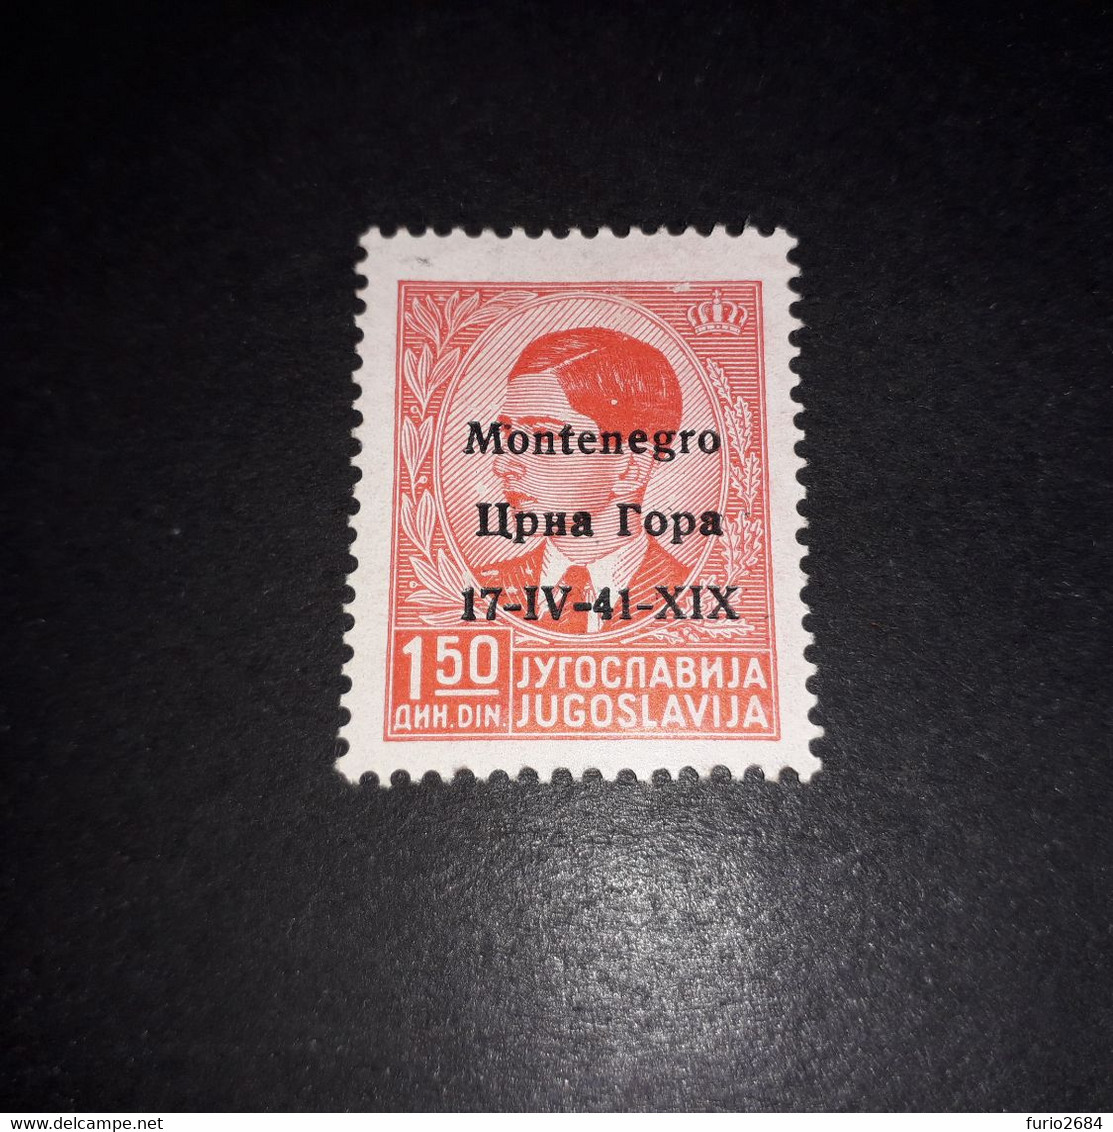 PL2153 REGNO D'ITALIA OCCUPAZIONE 2'' GUERRA MONDIALE MONTENEGRO 1941 FRANCOBOLLI DI JUGOSLAVIA 1,50D. "X" - Montenegro